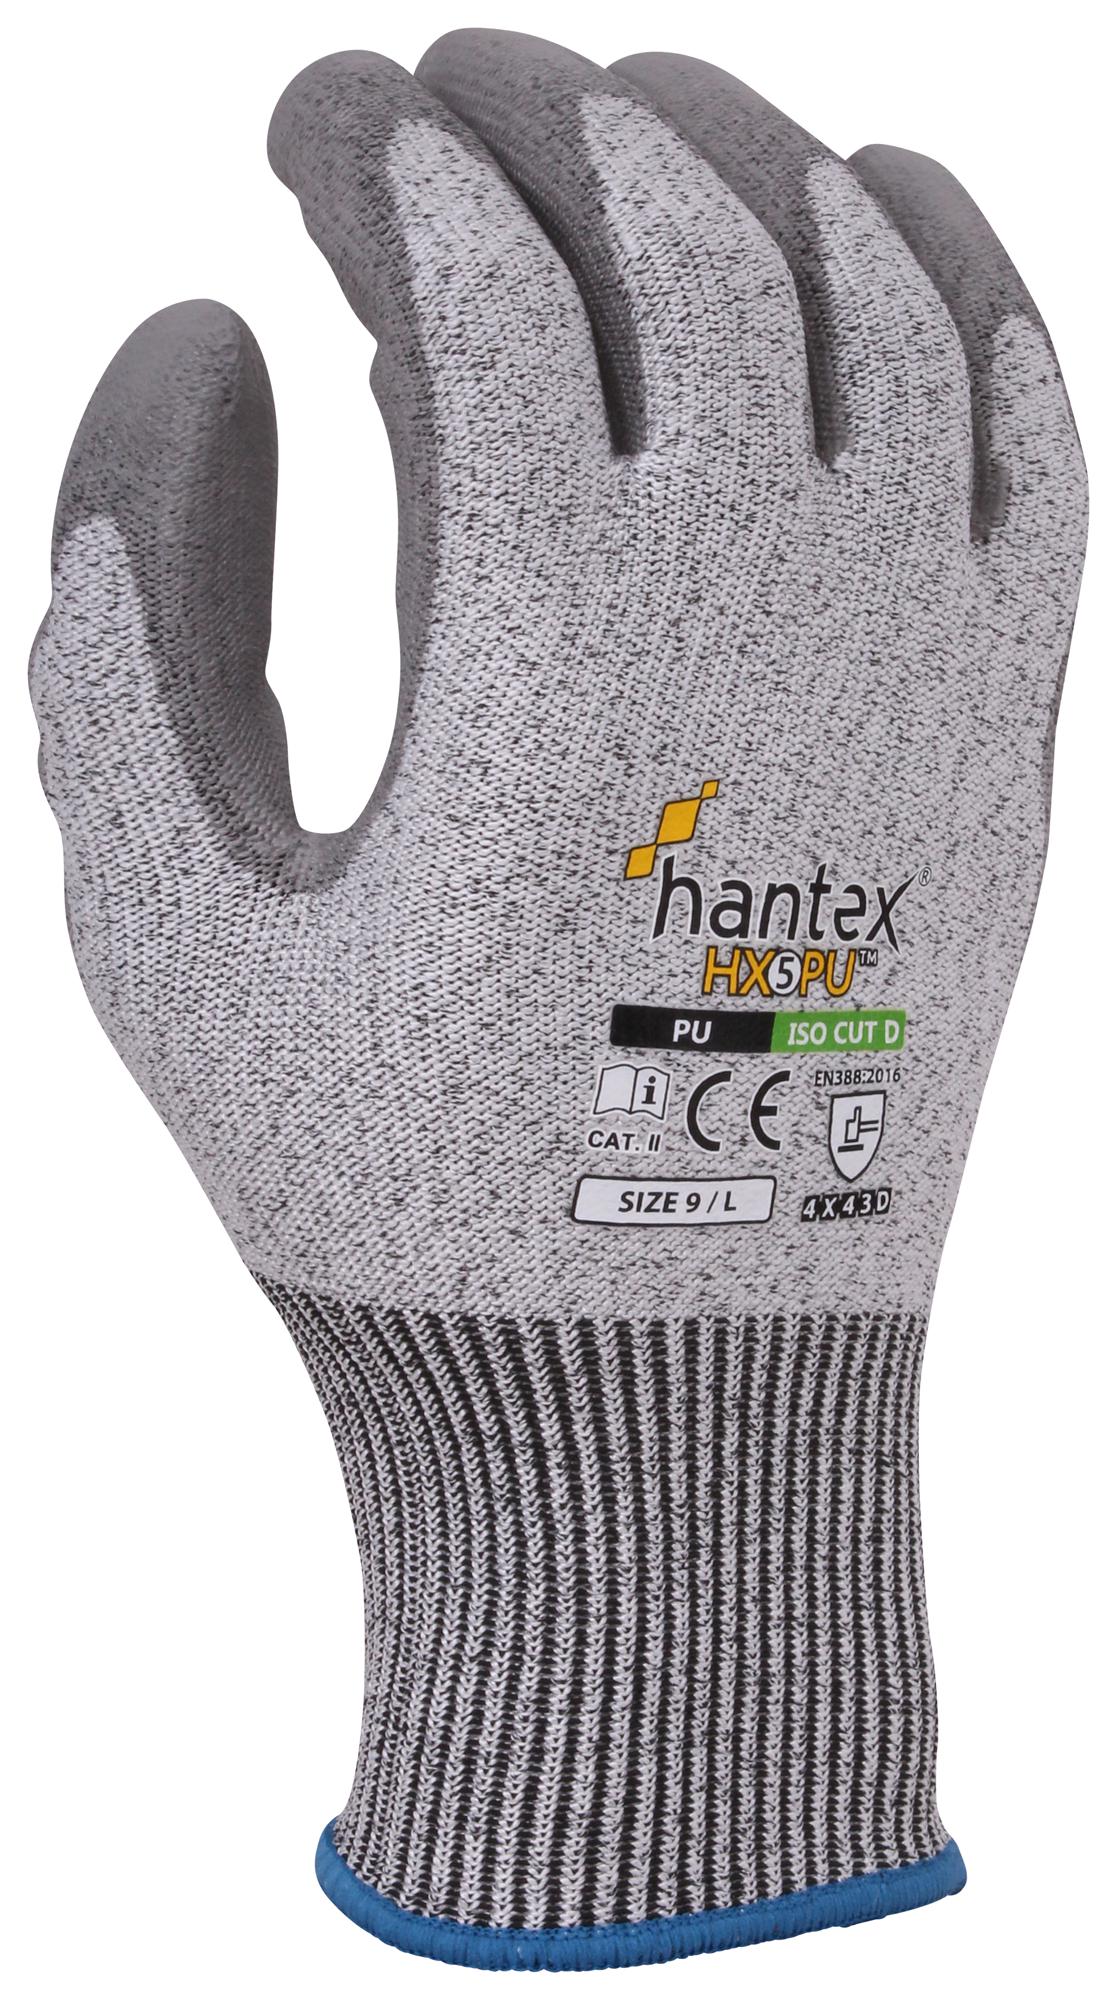 Uci G/hantex-Hx5/pu/10 Gloves, Hppe, Grey, Xl